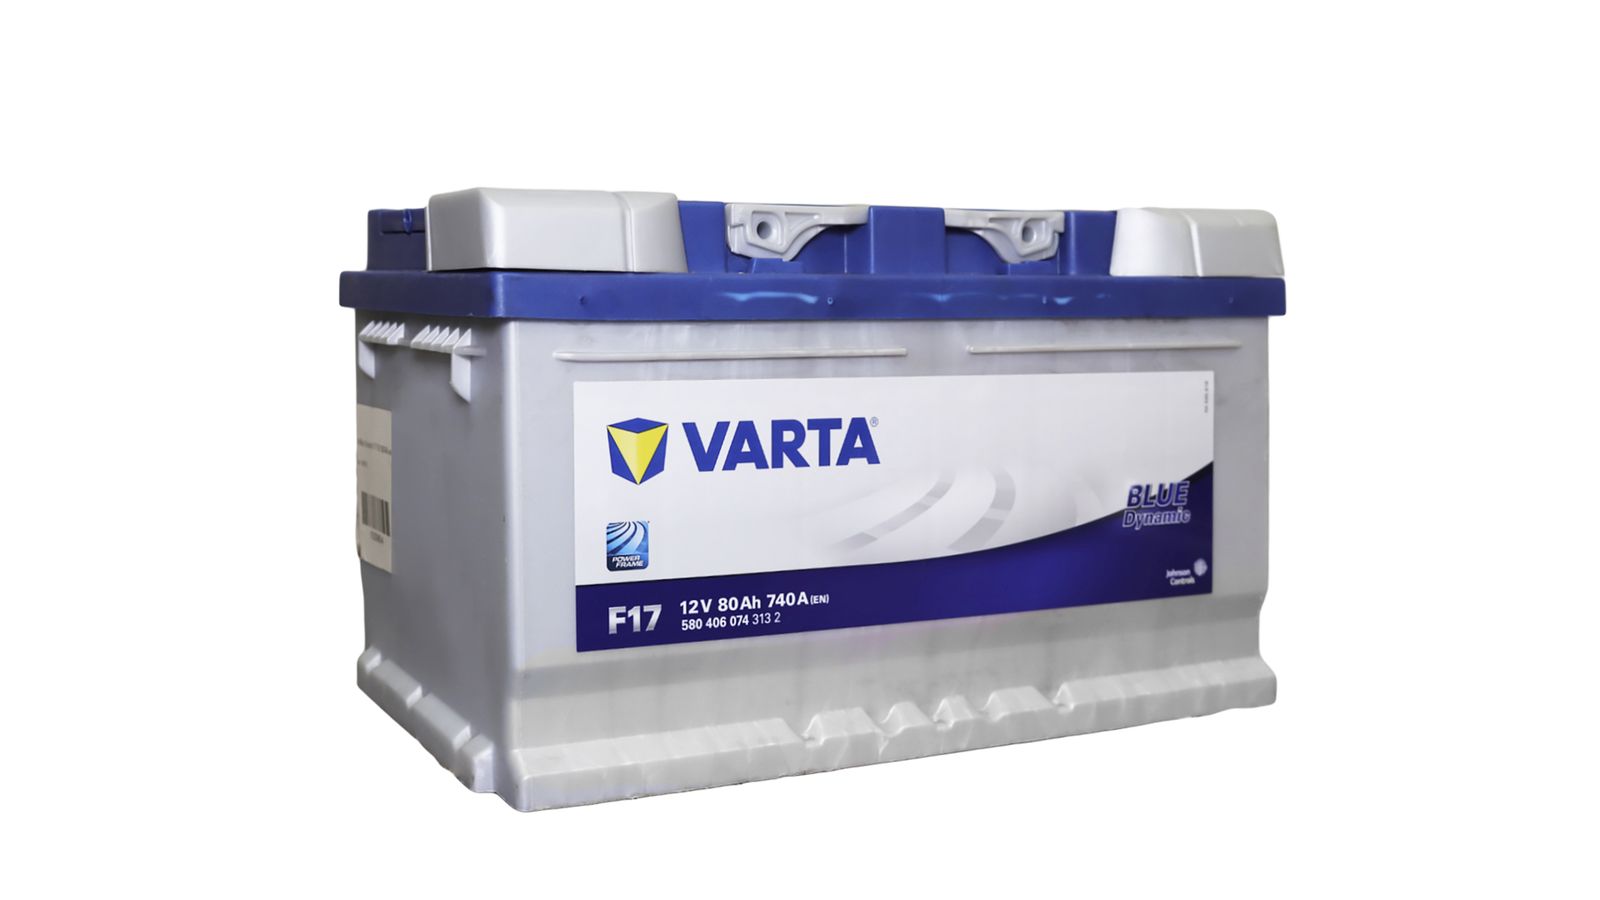 Аккумуляторная батарея VARTA BLUE 6СТ80 F17 * 580 406 074 фотография №2